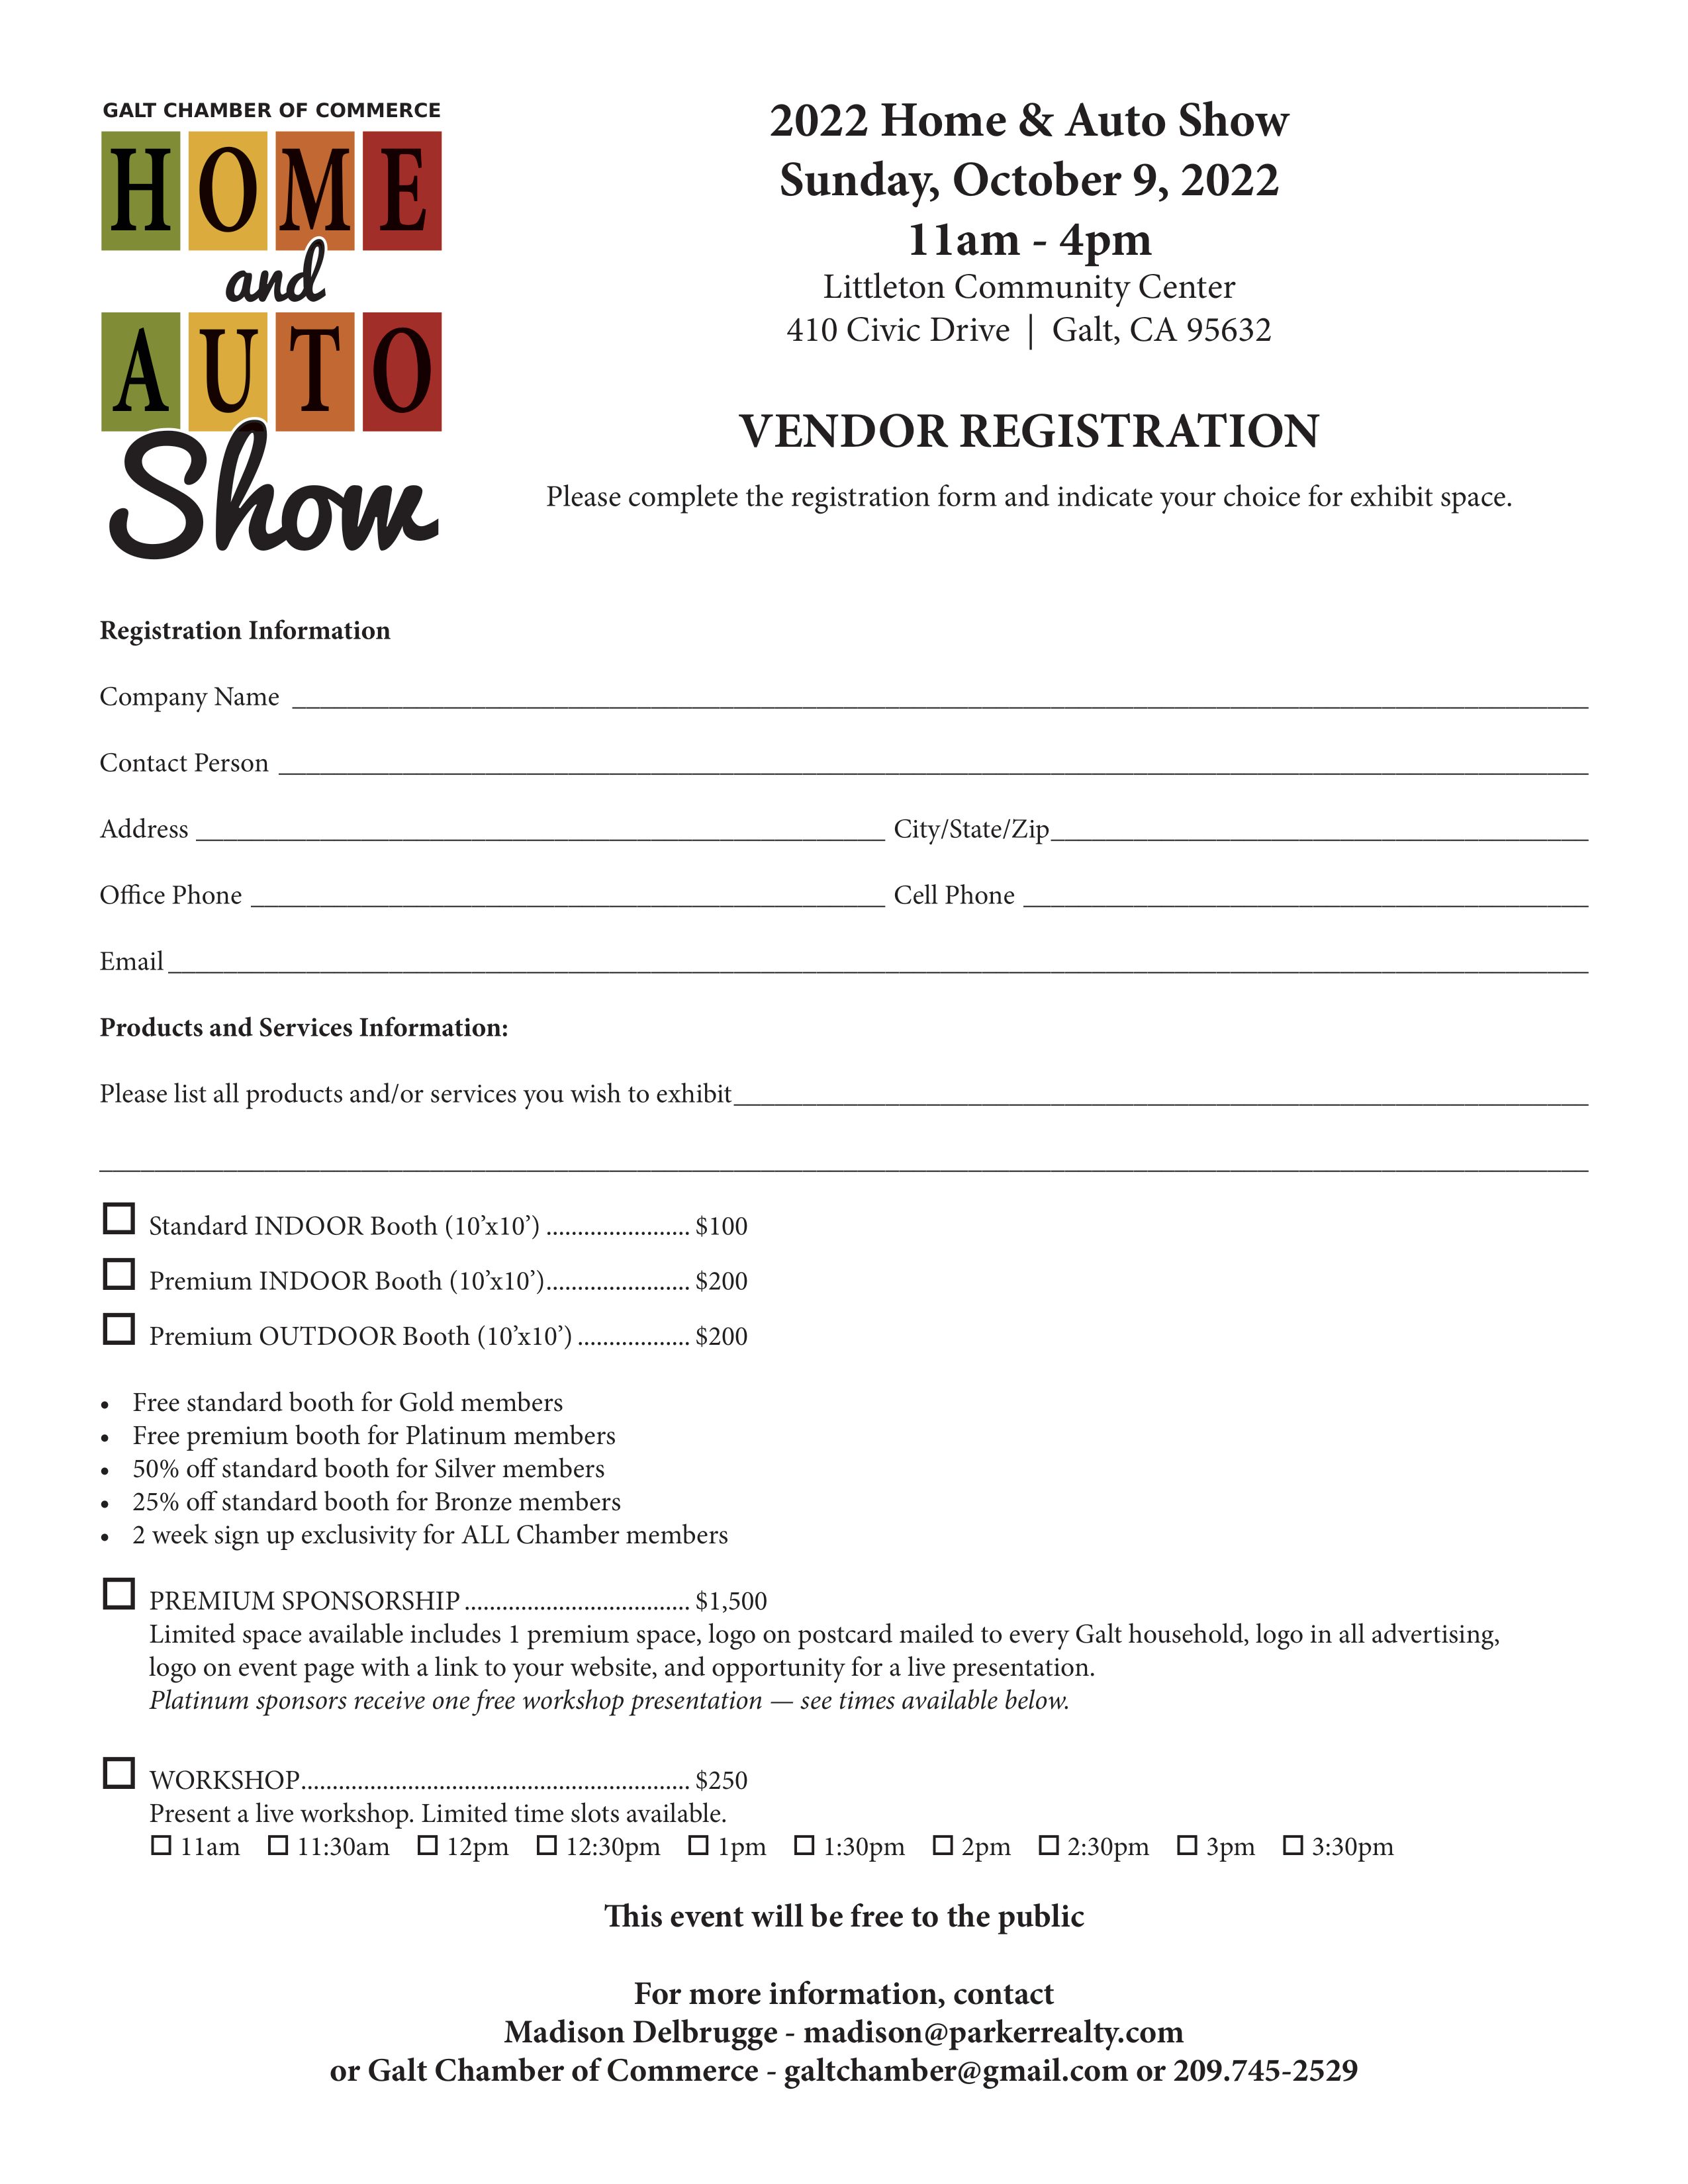 Home & Auto Show 2022 Sponsor/Vendor Registration Form, 10/09/2022, 11am to 4pm